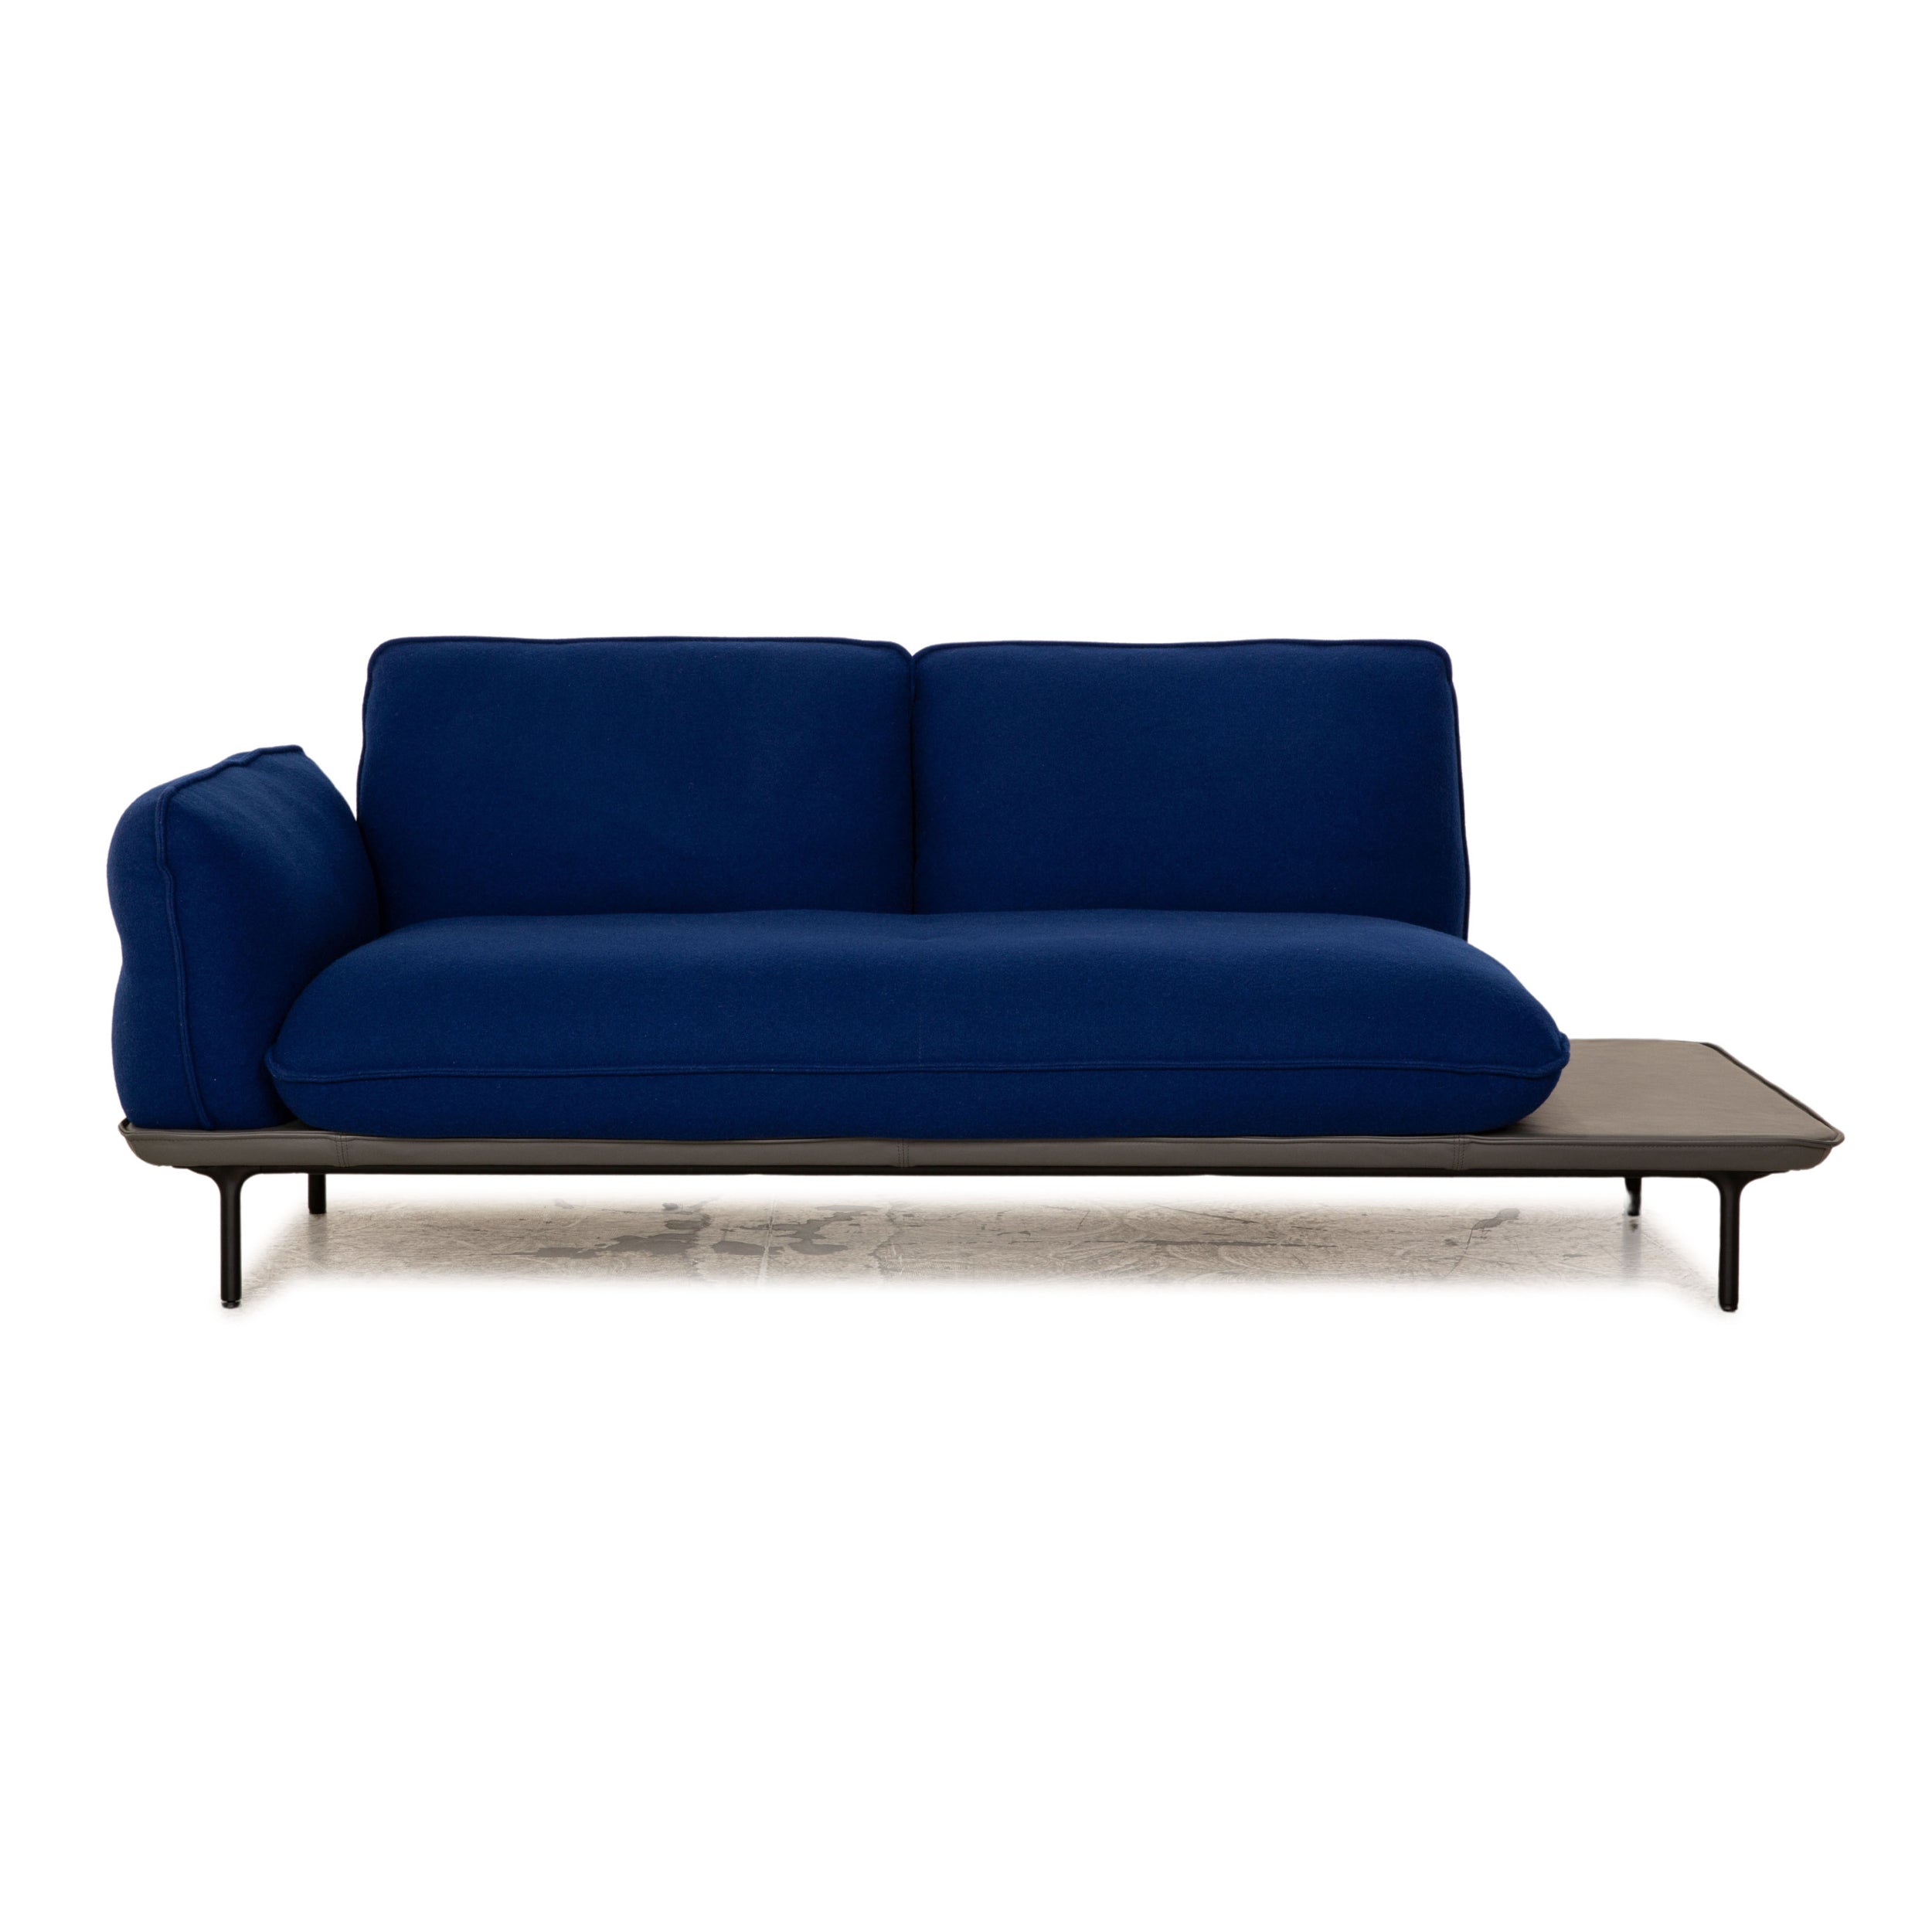 Rolf Benz 515 Addit Stoff Zweisitzer Blau Ledergestell Sofa Couch